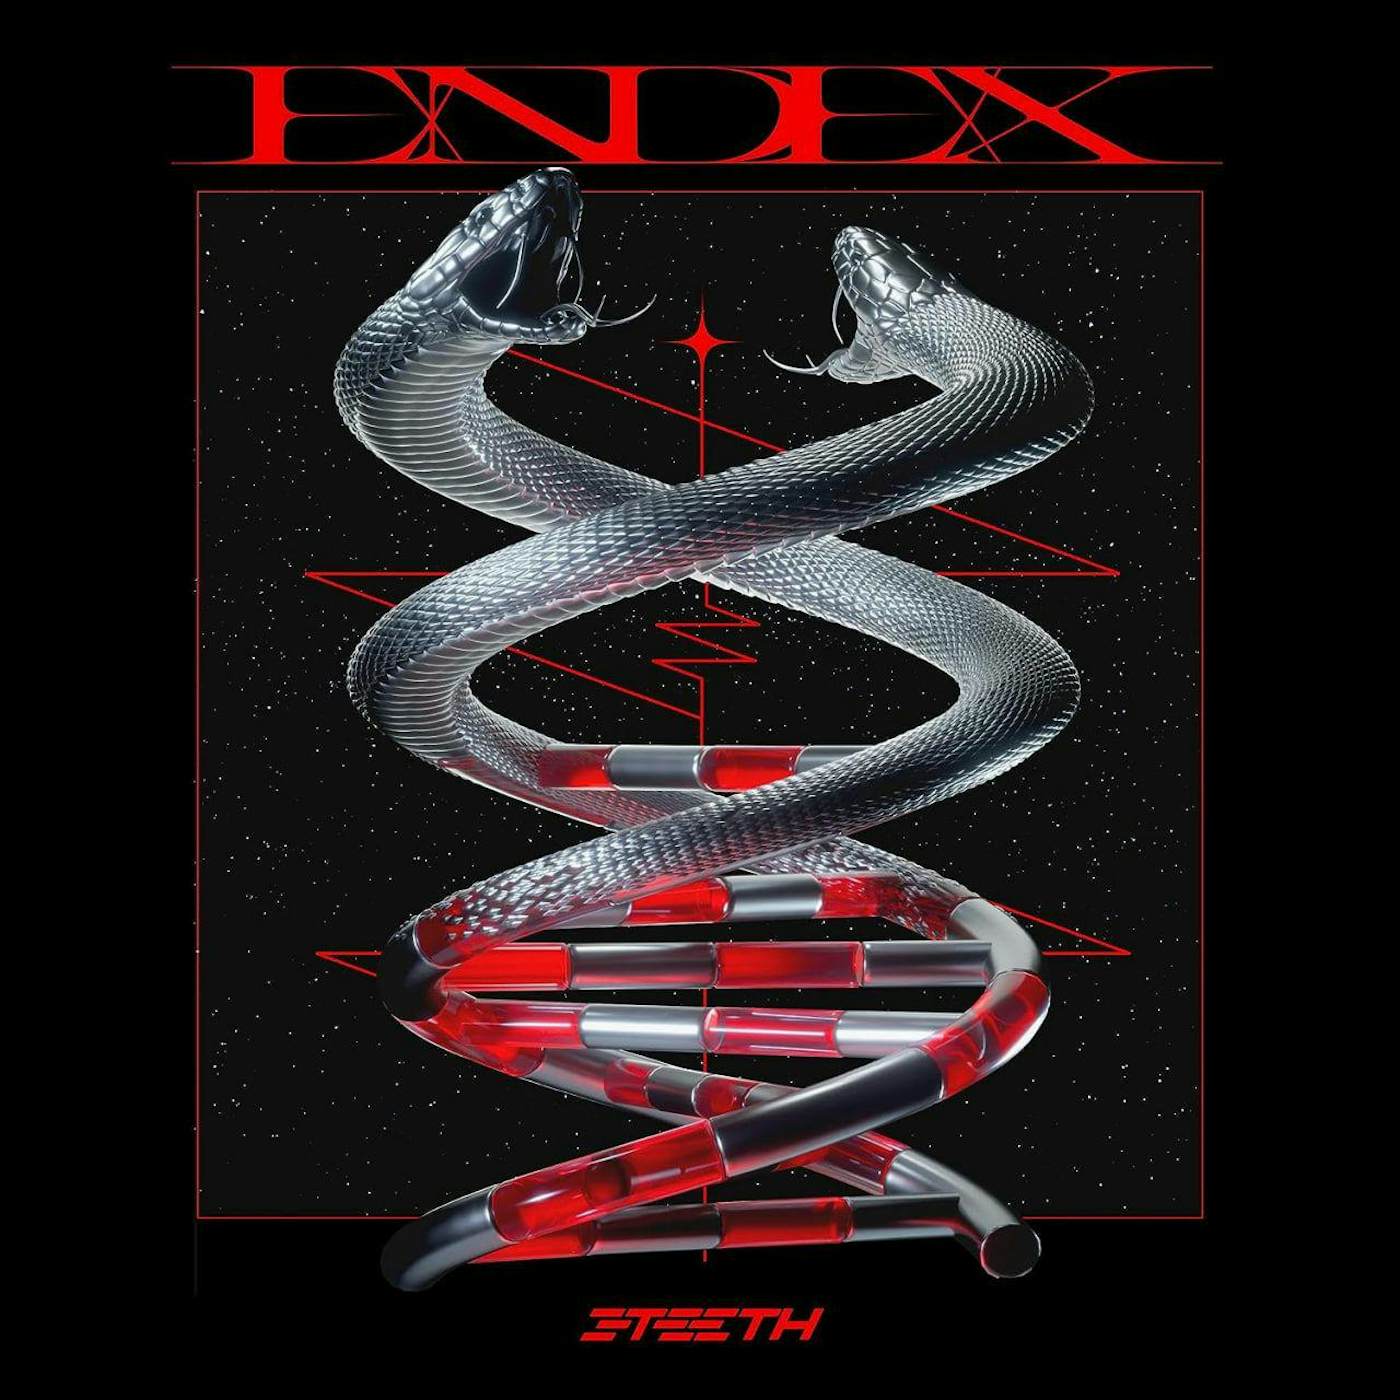 3TEETH Endex (Red Smoke) Vinyl Record